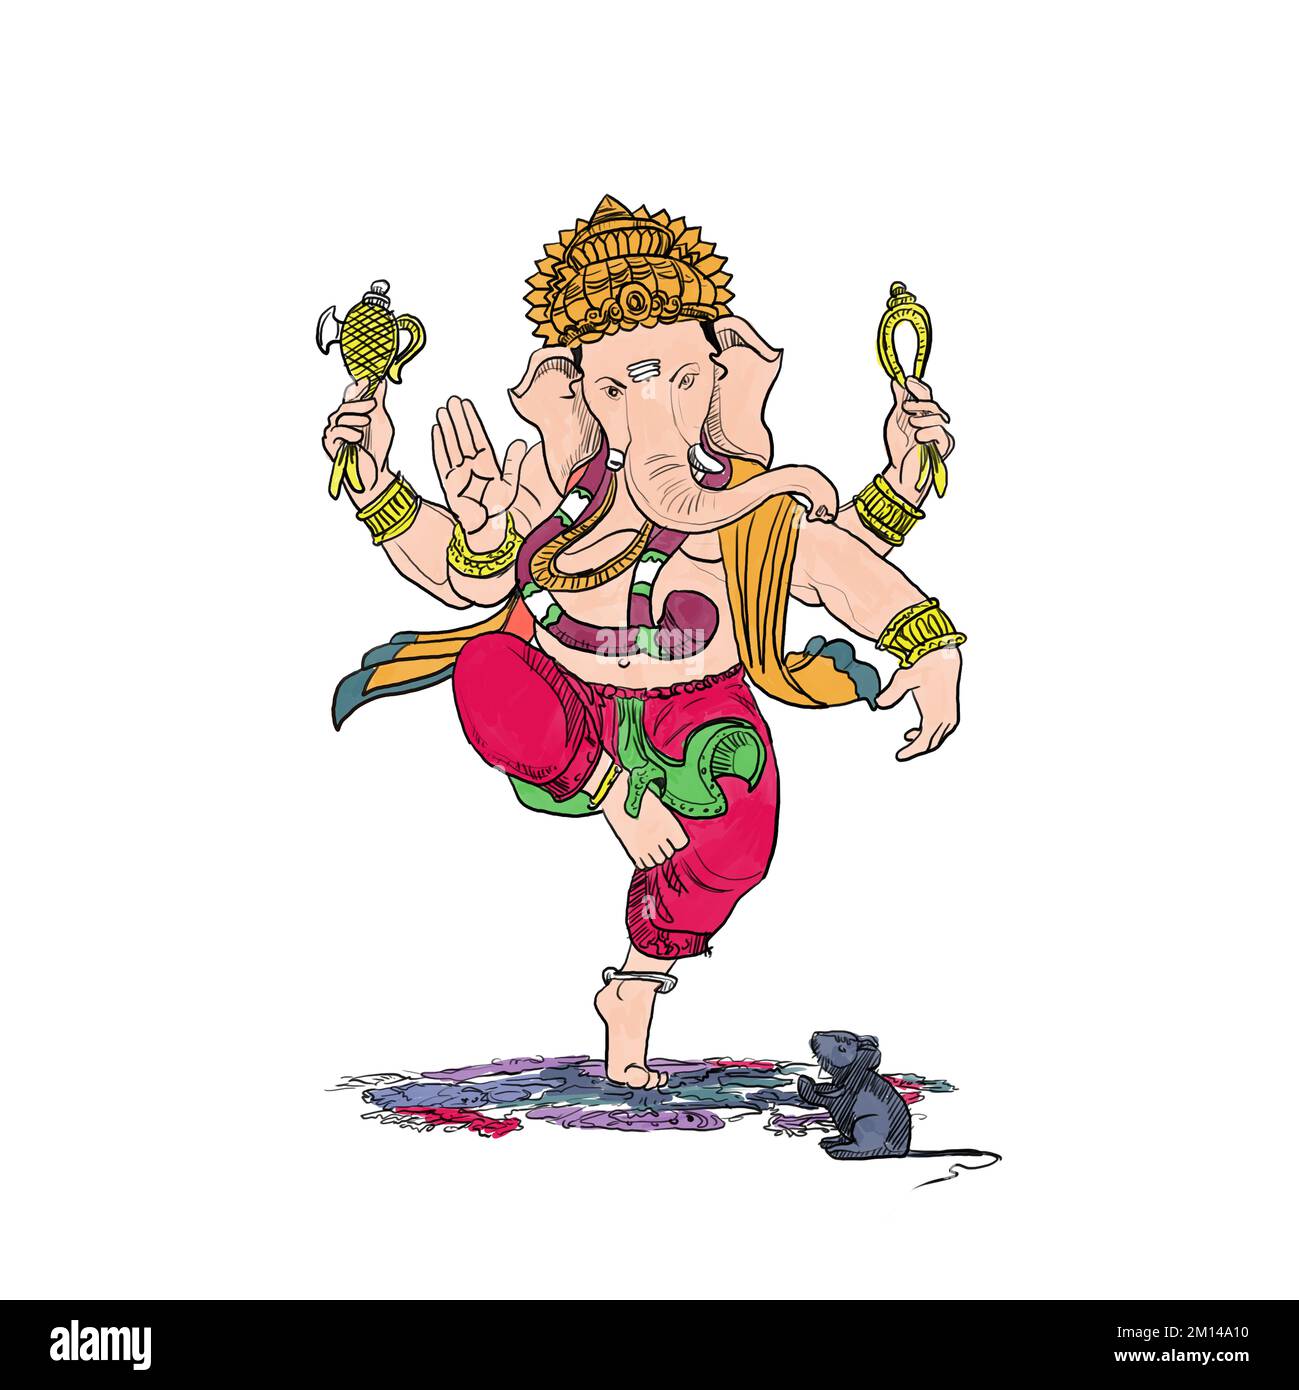 Illustration von Lord Ganpati im Hintergrund von Ganesh Chaturthi. Lord Ganesh. Puja. Ganesh Chaturthi. Es wird für Postkarten, Drucke, Textilien, Tätowierungskunst verwendet Stockfoto